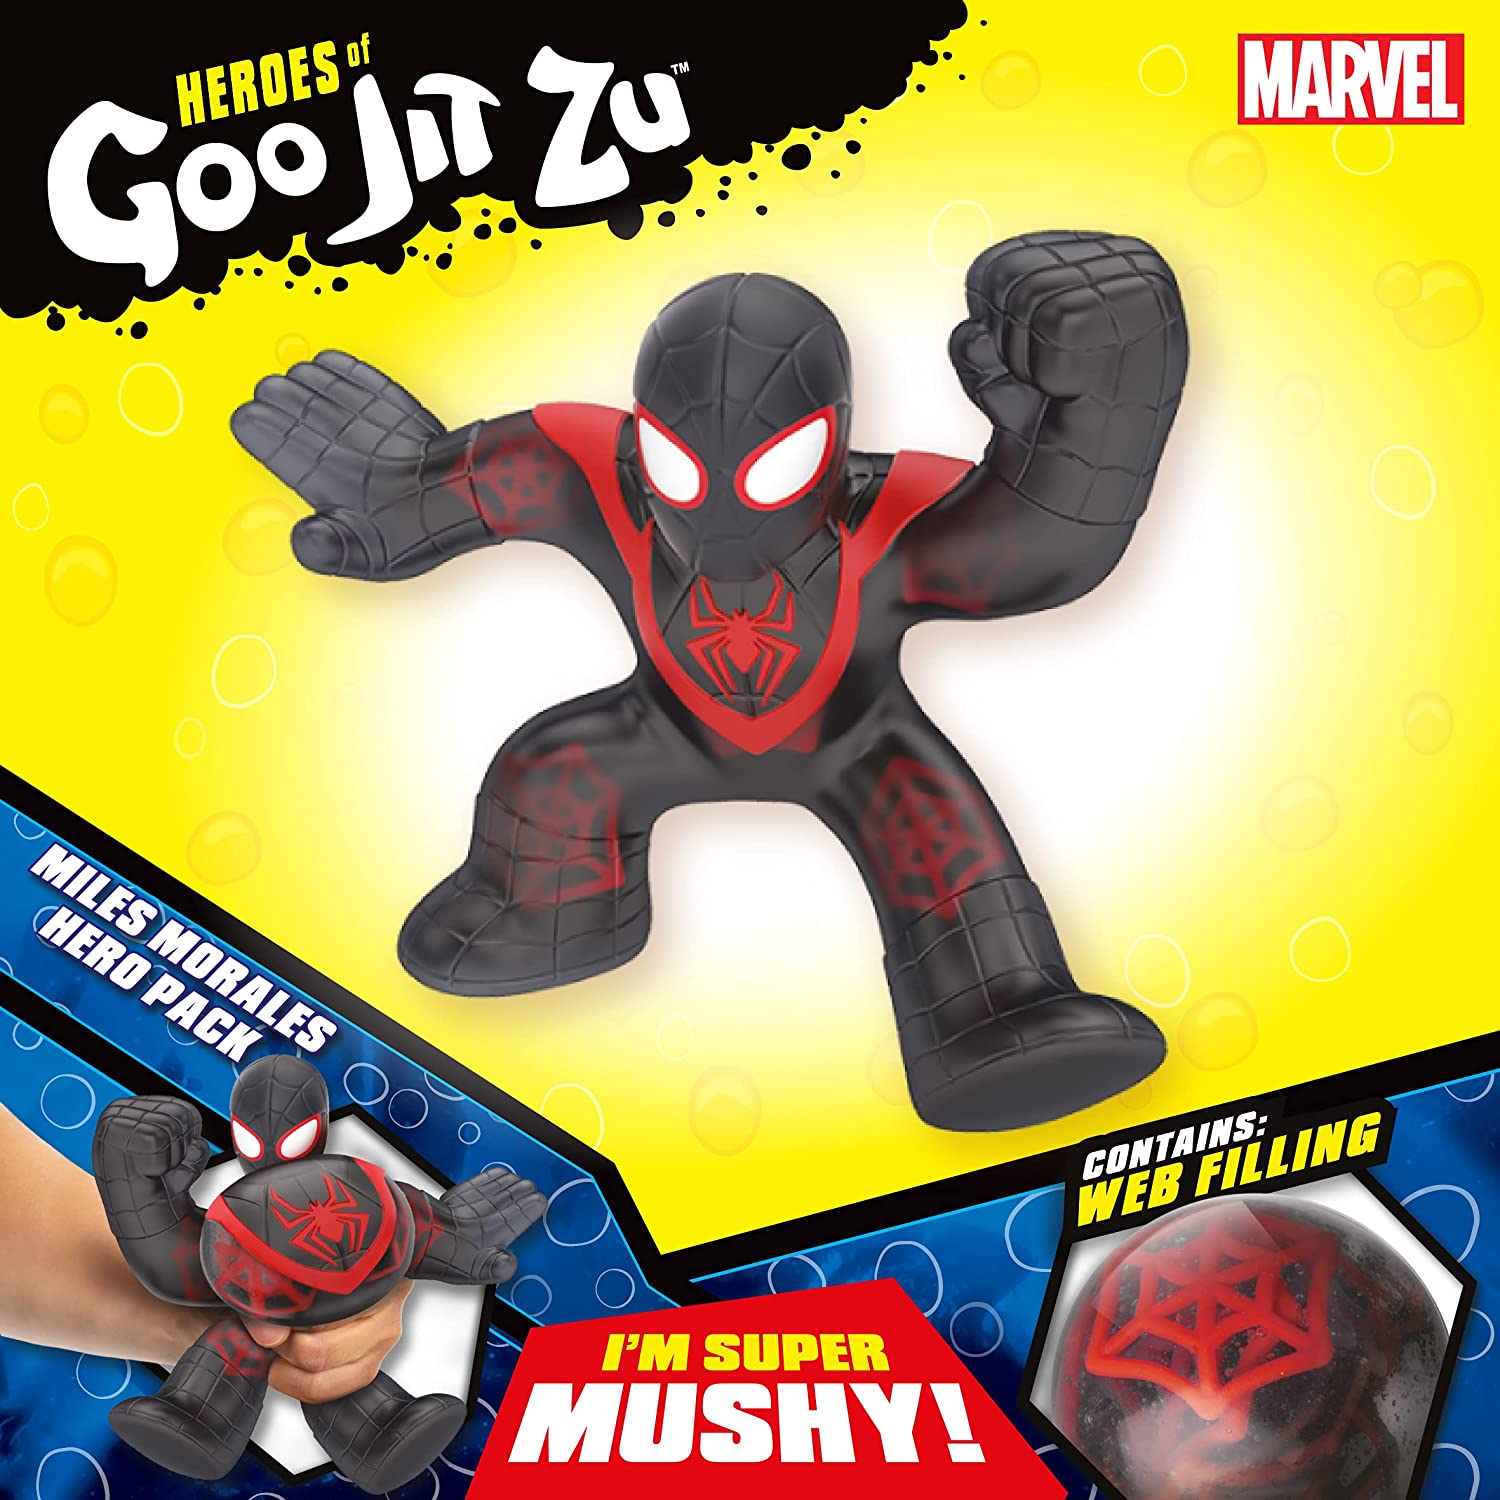 Marvel Heroes of Goo Jit Zu Squishy Figure | Miles Morales